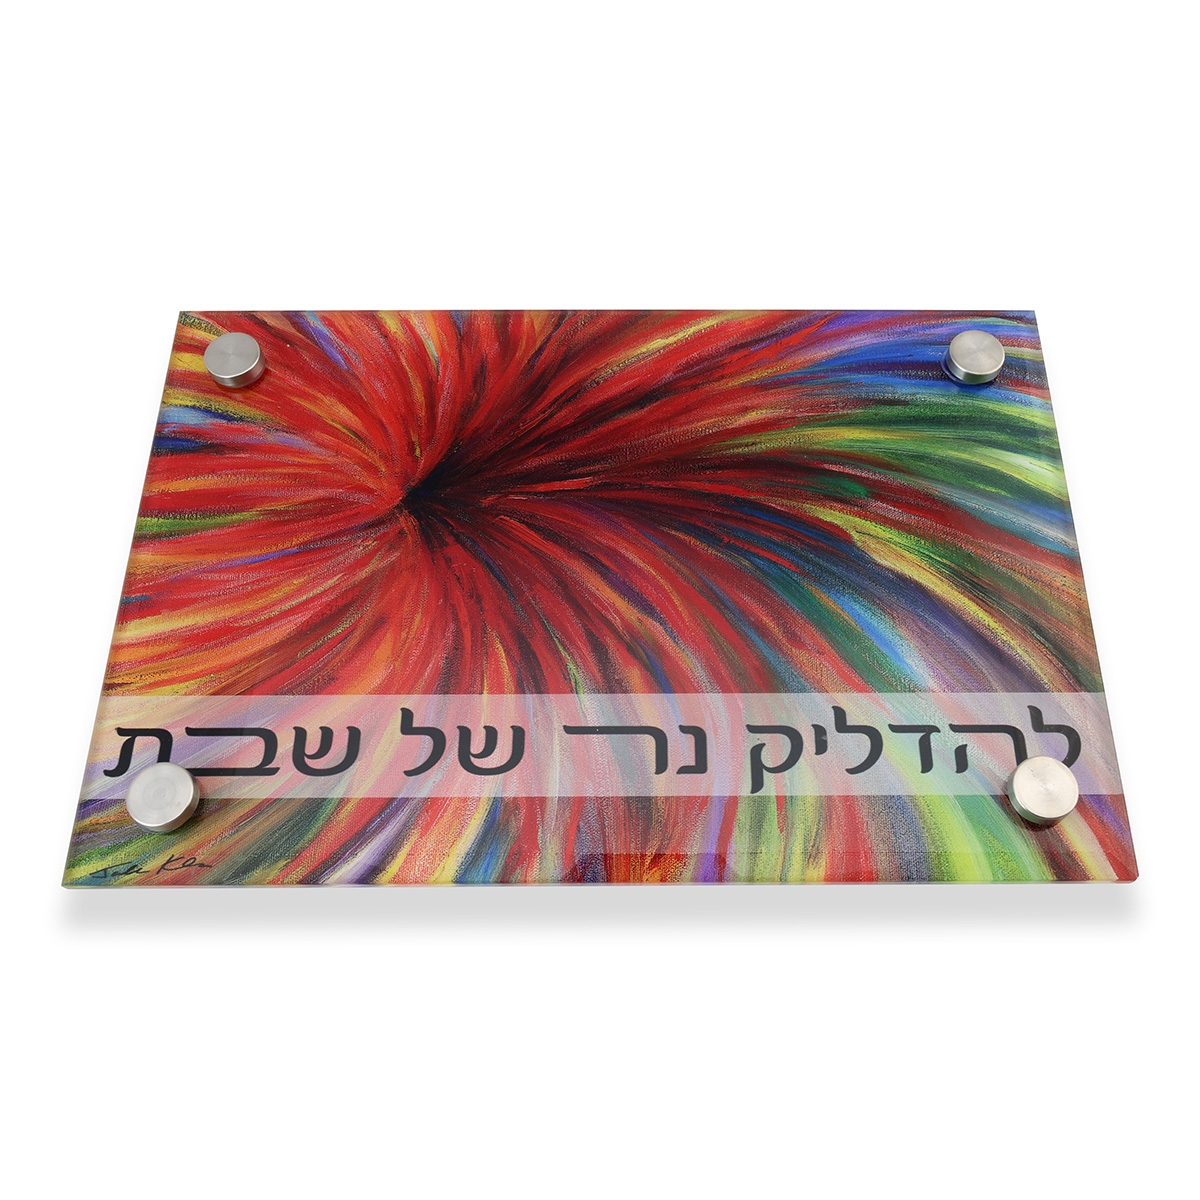 Jordana Klein "Red Flower" Glass Tray for Shabbat Candlesticks - 1